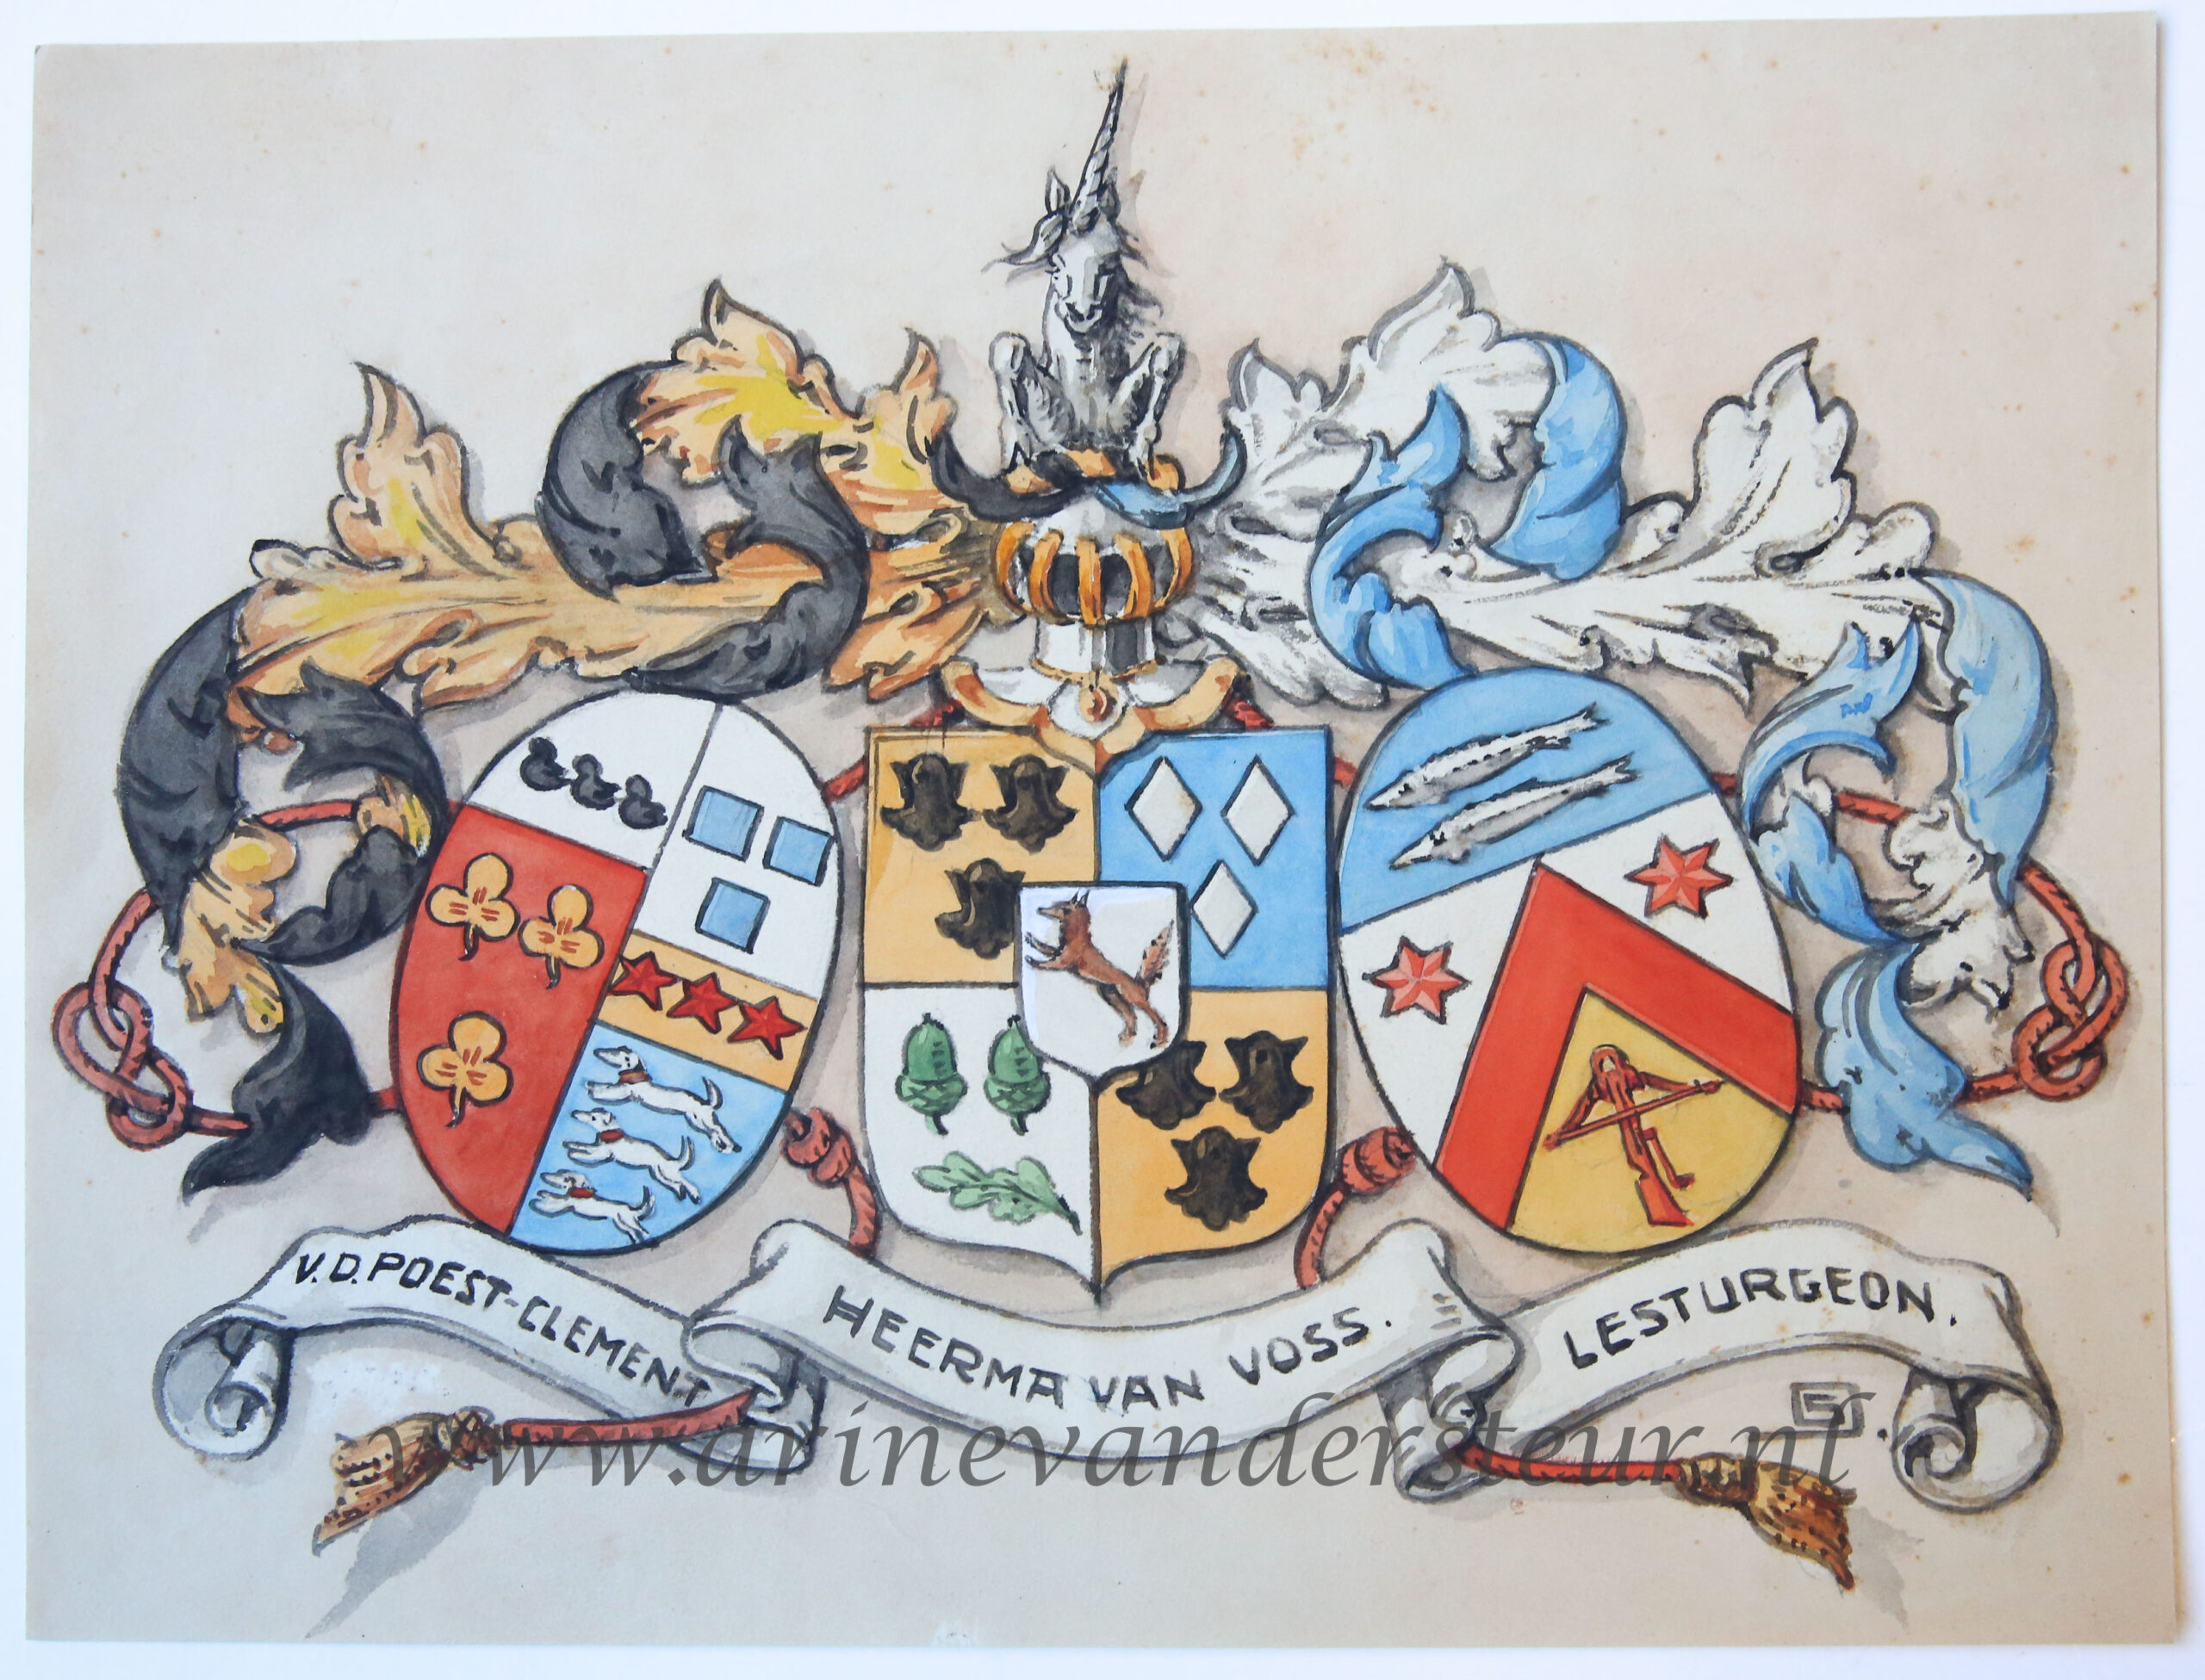 [Familiewapen/coat of arms]HEERMA VAN VOSS; V.D. POEST CLEMENT; LESTURGEON --- Gekleurd tafereel van drie familiewapens: v.d. Poest Clement, Heerma van Voss en Lesturgeon, ca 1930.